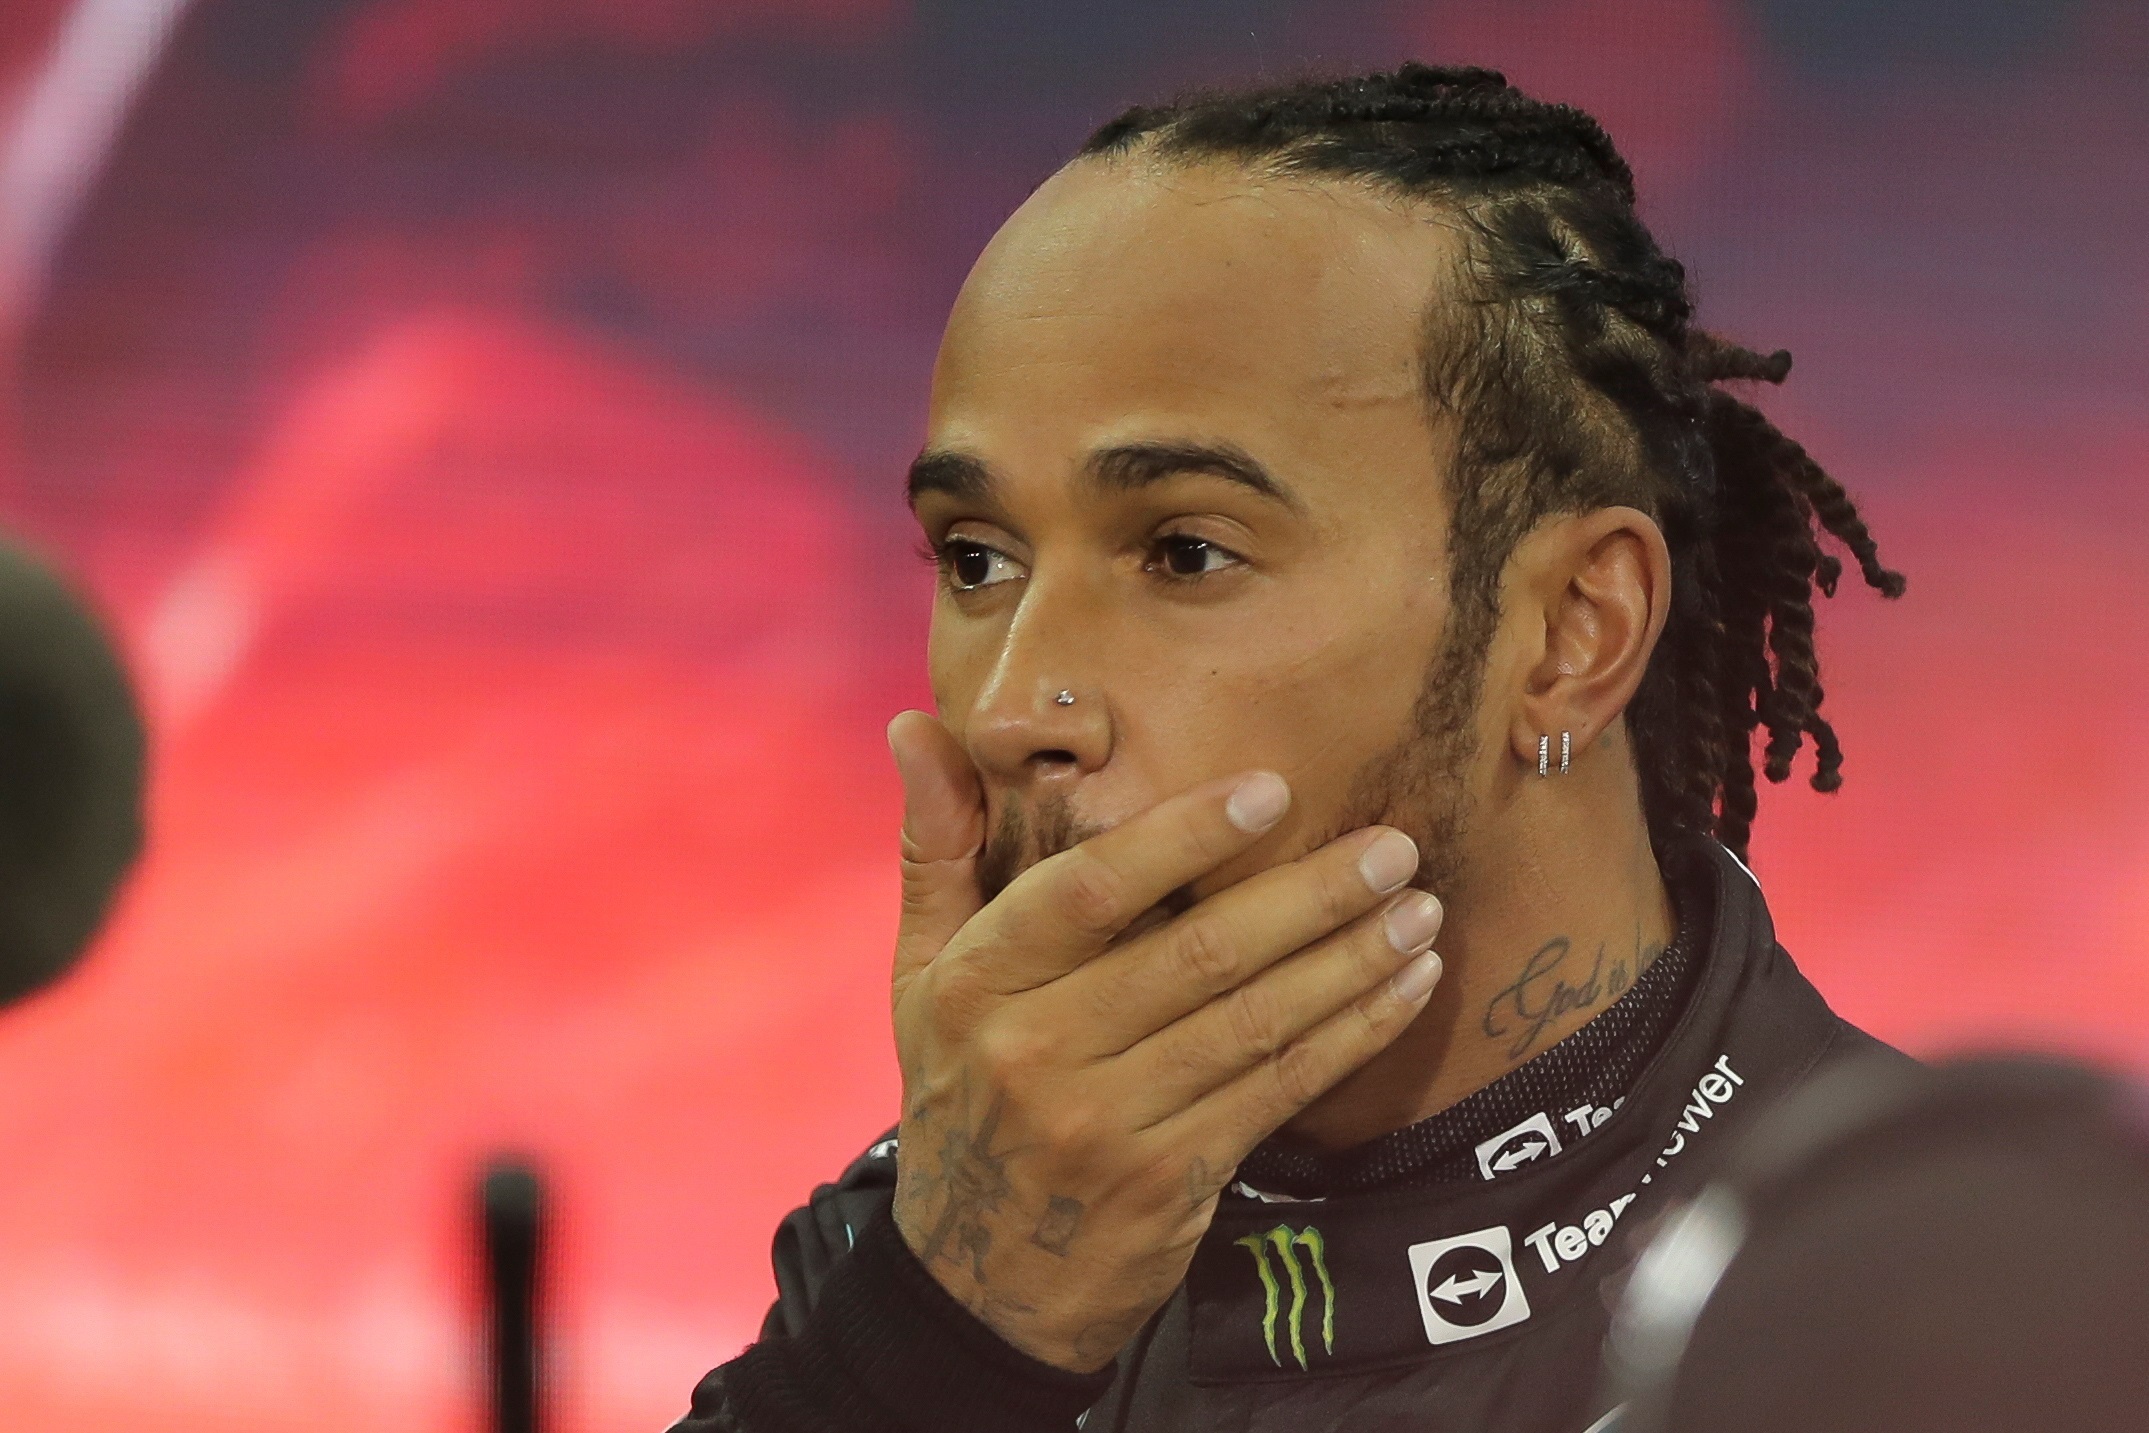 Qué hay detrás de los rumores del posible retiro de Lewis Hamilton